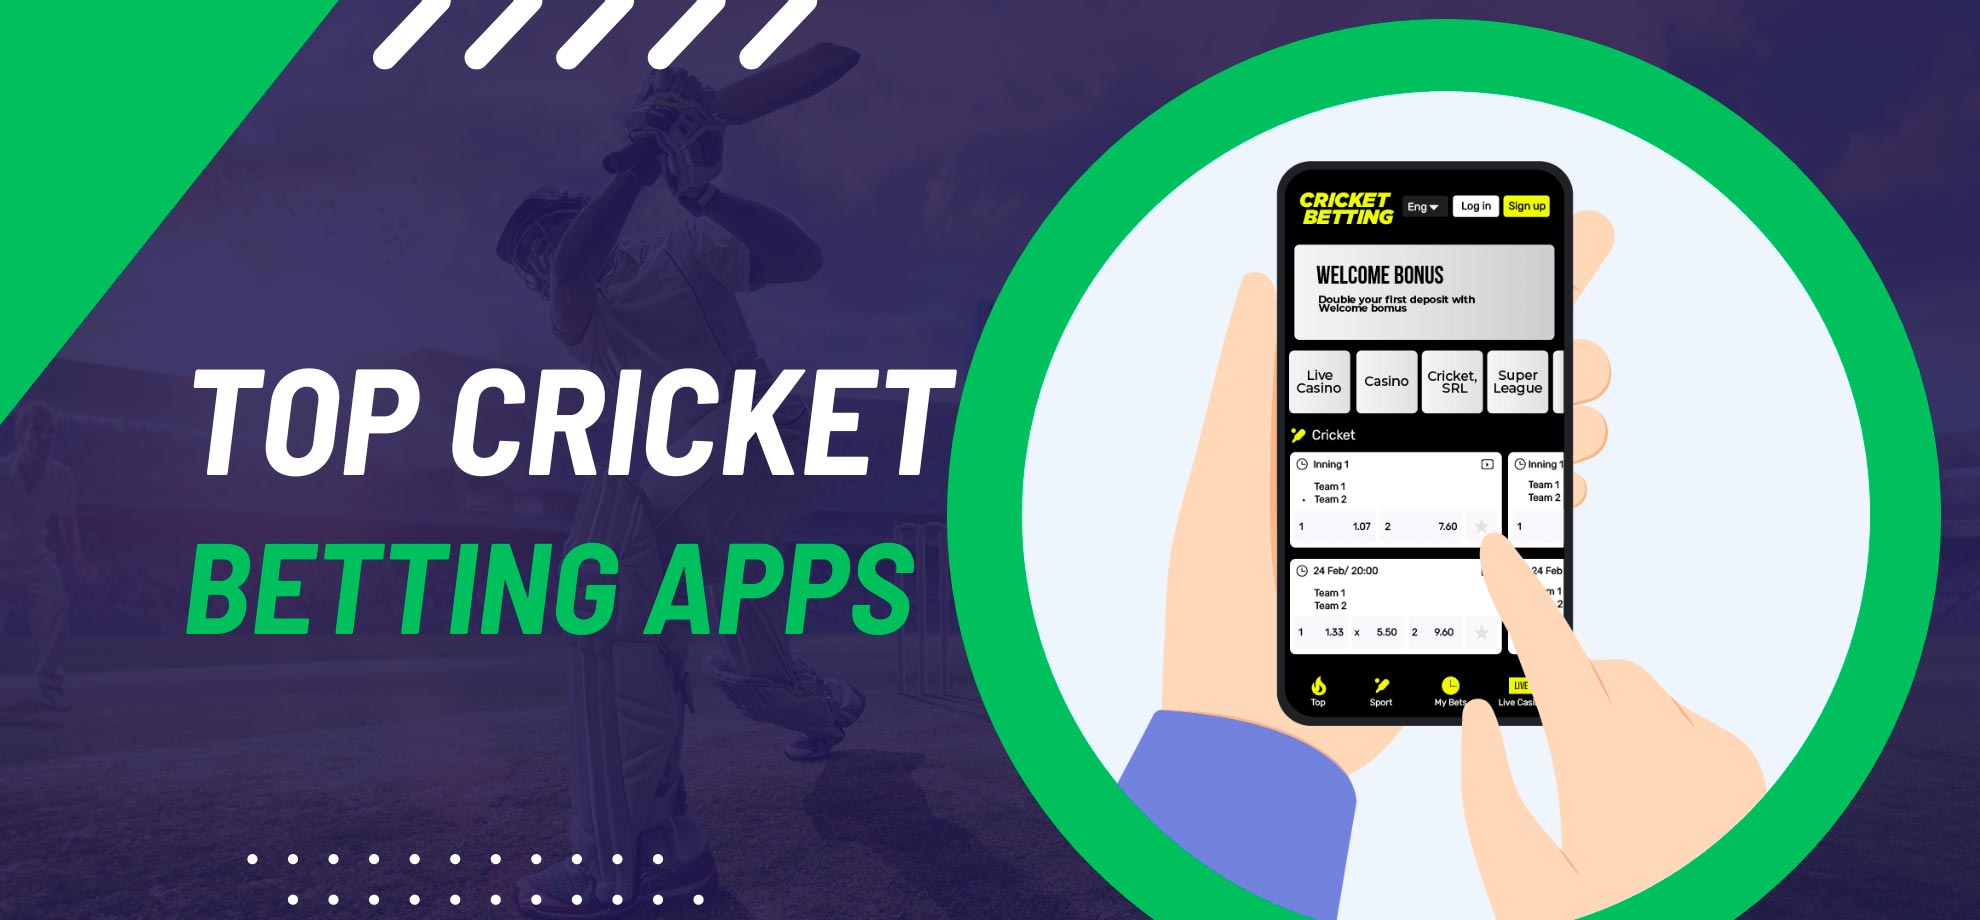 Cricket exchange betting app